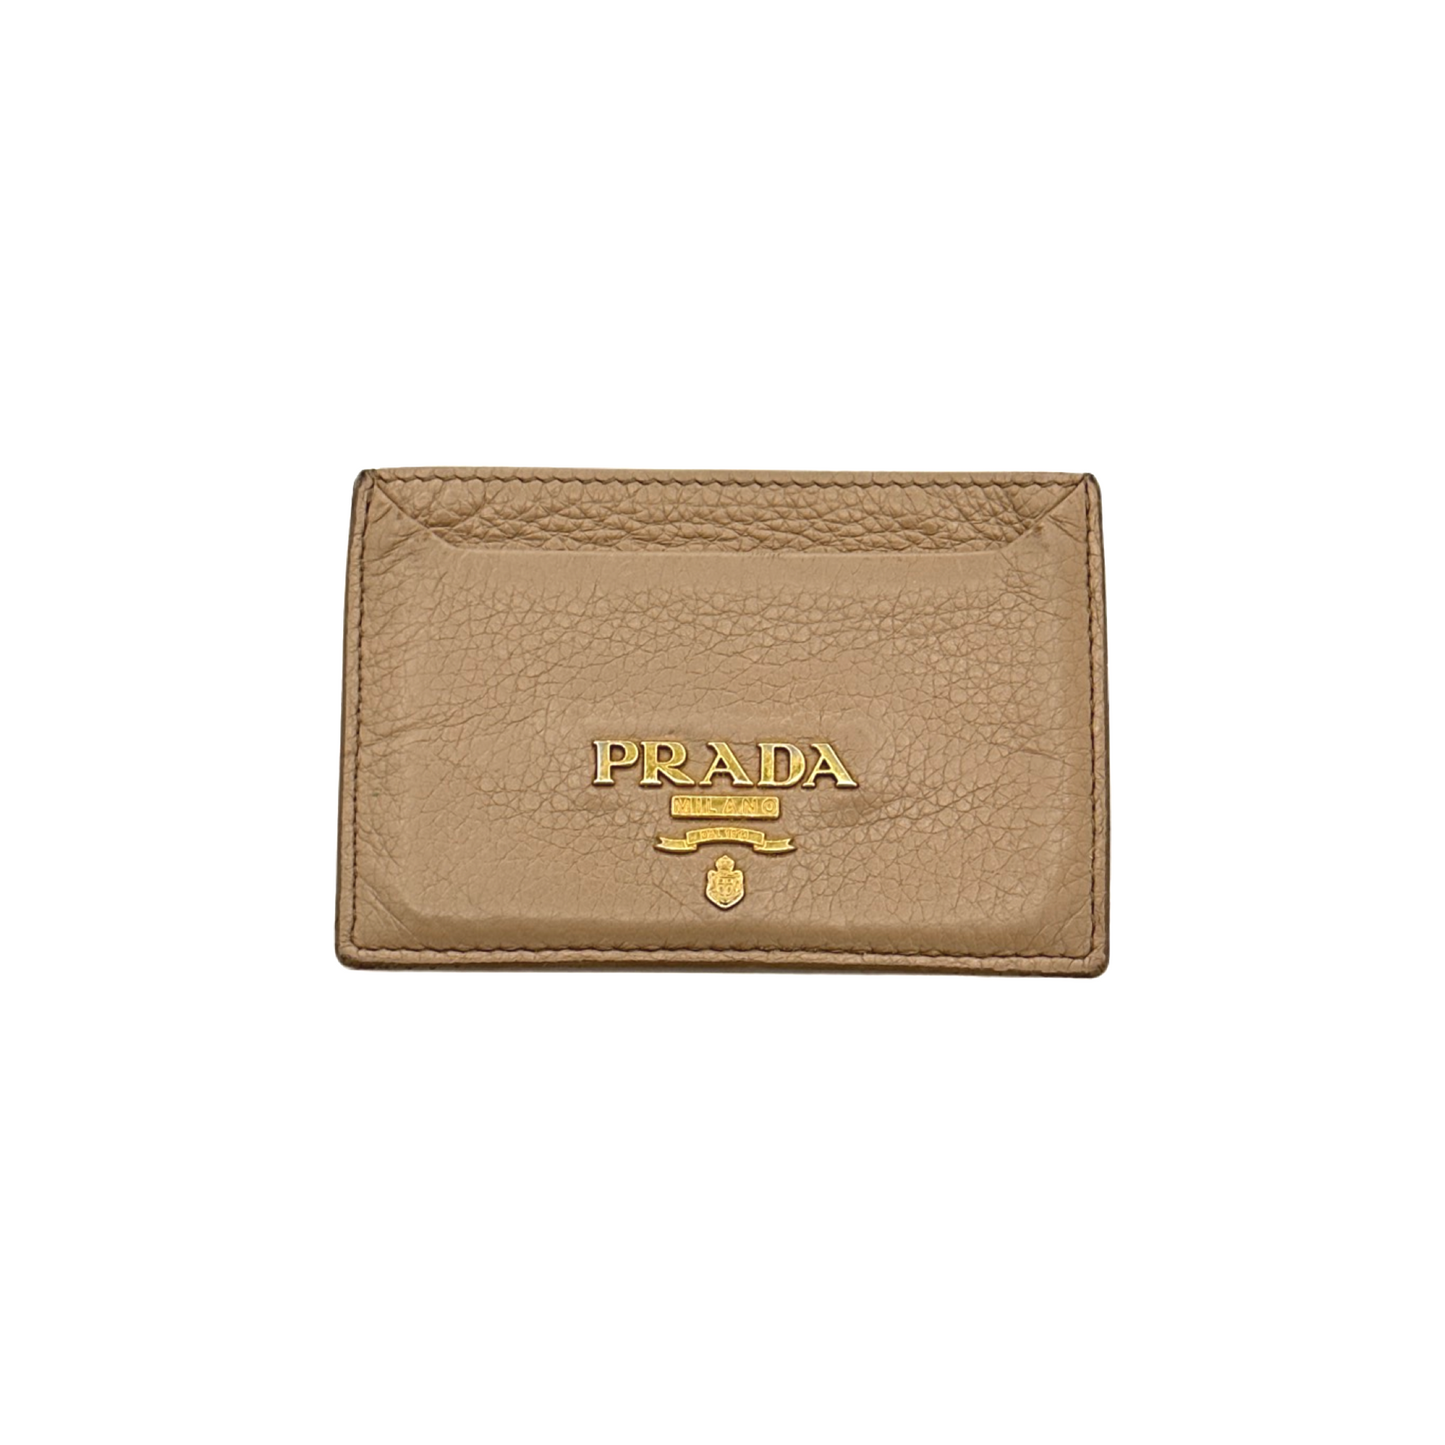 Prada Card Holder Tan (C)